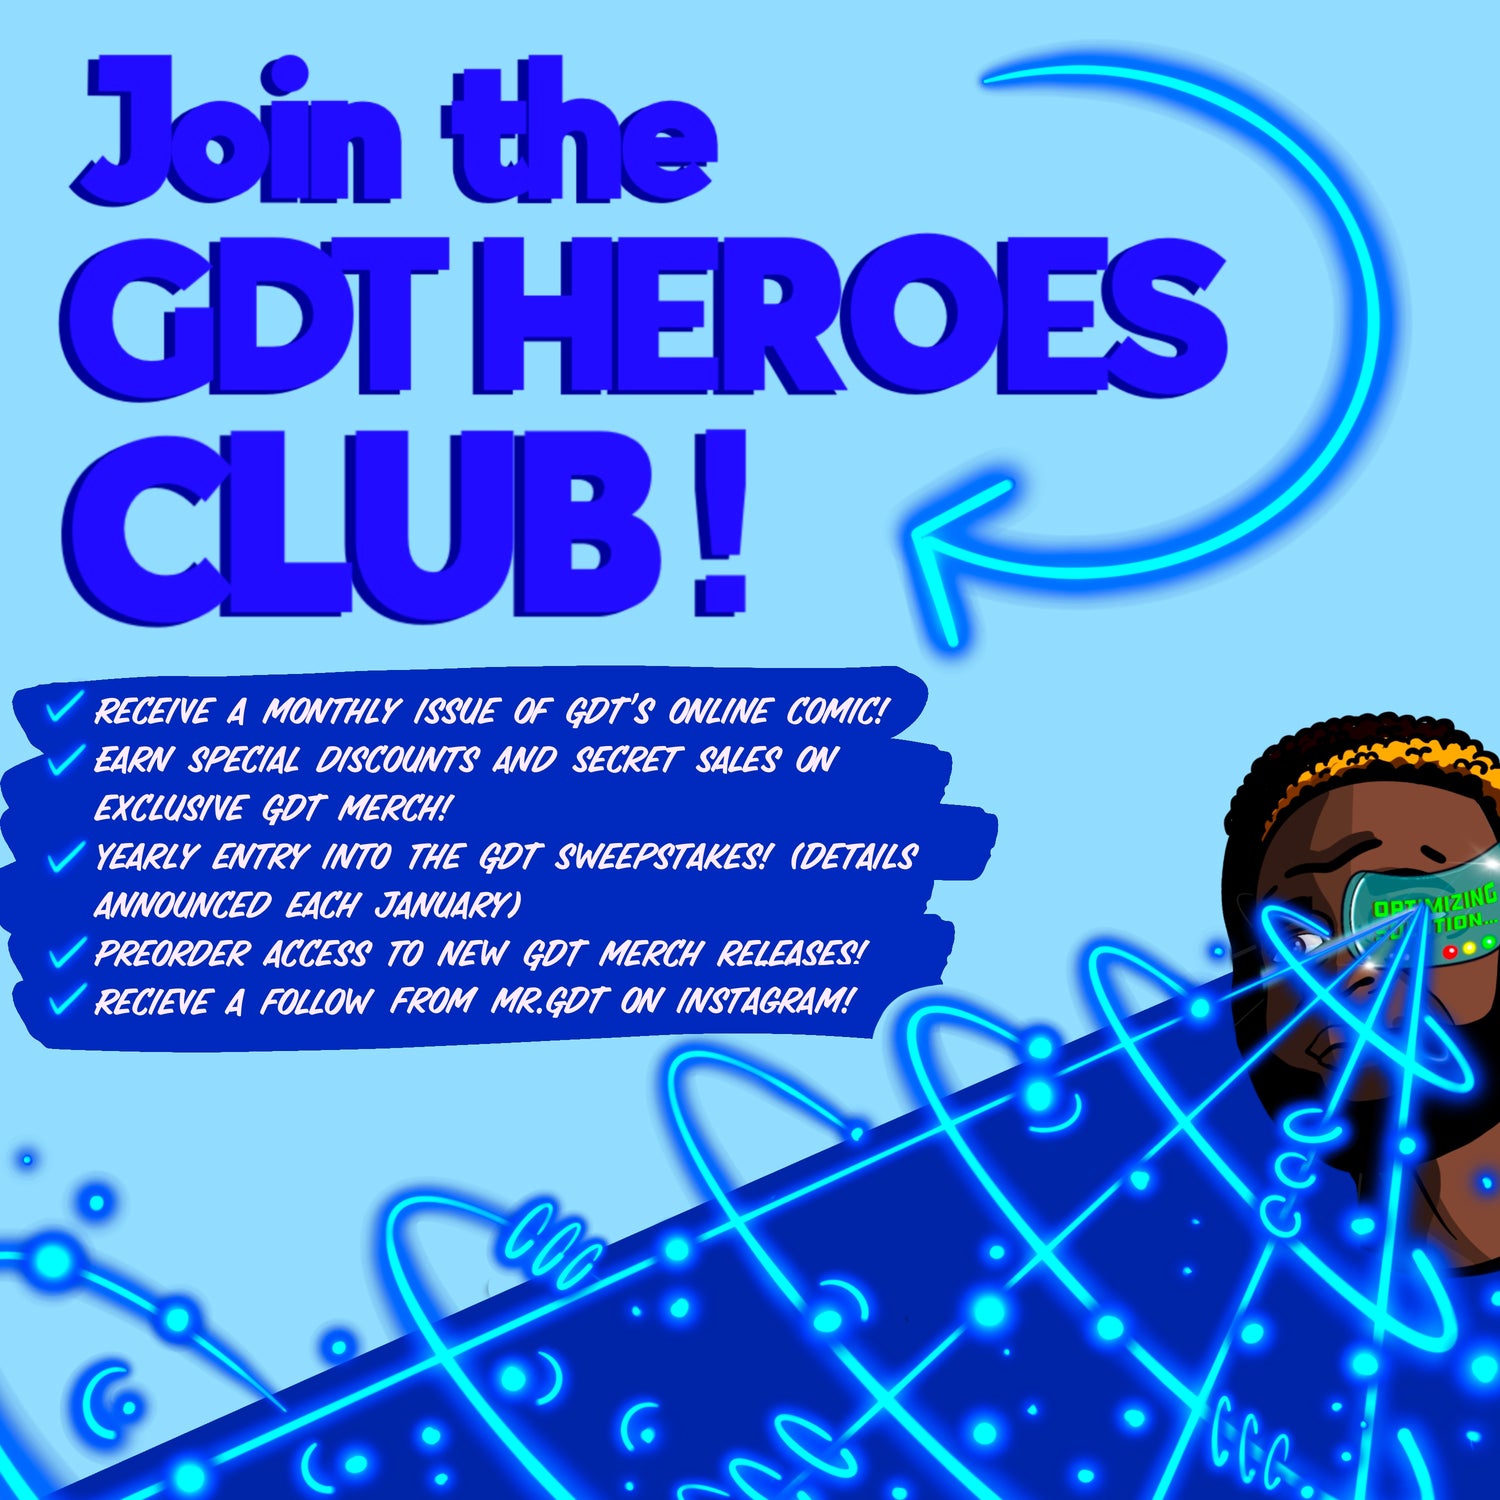 GDT HEROES CLUB!